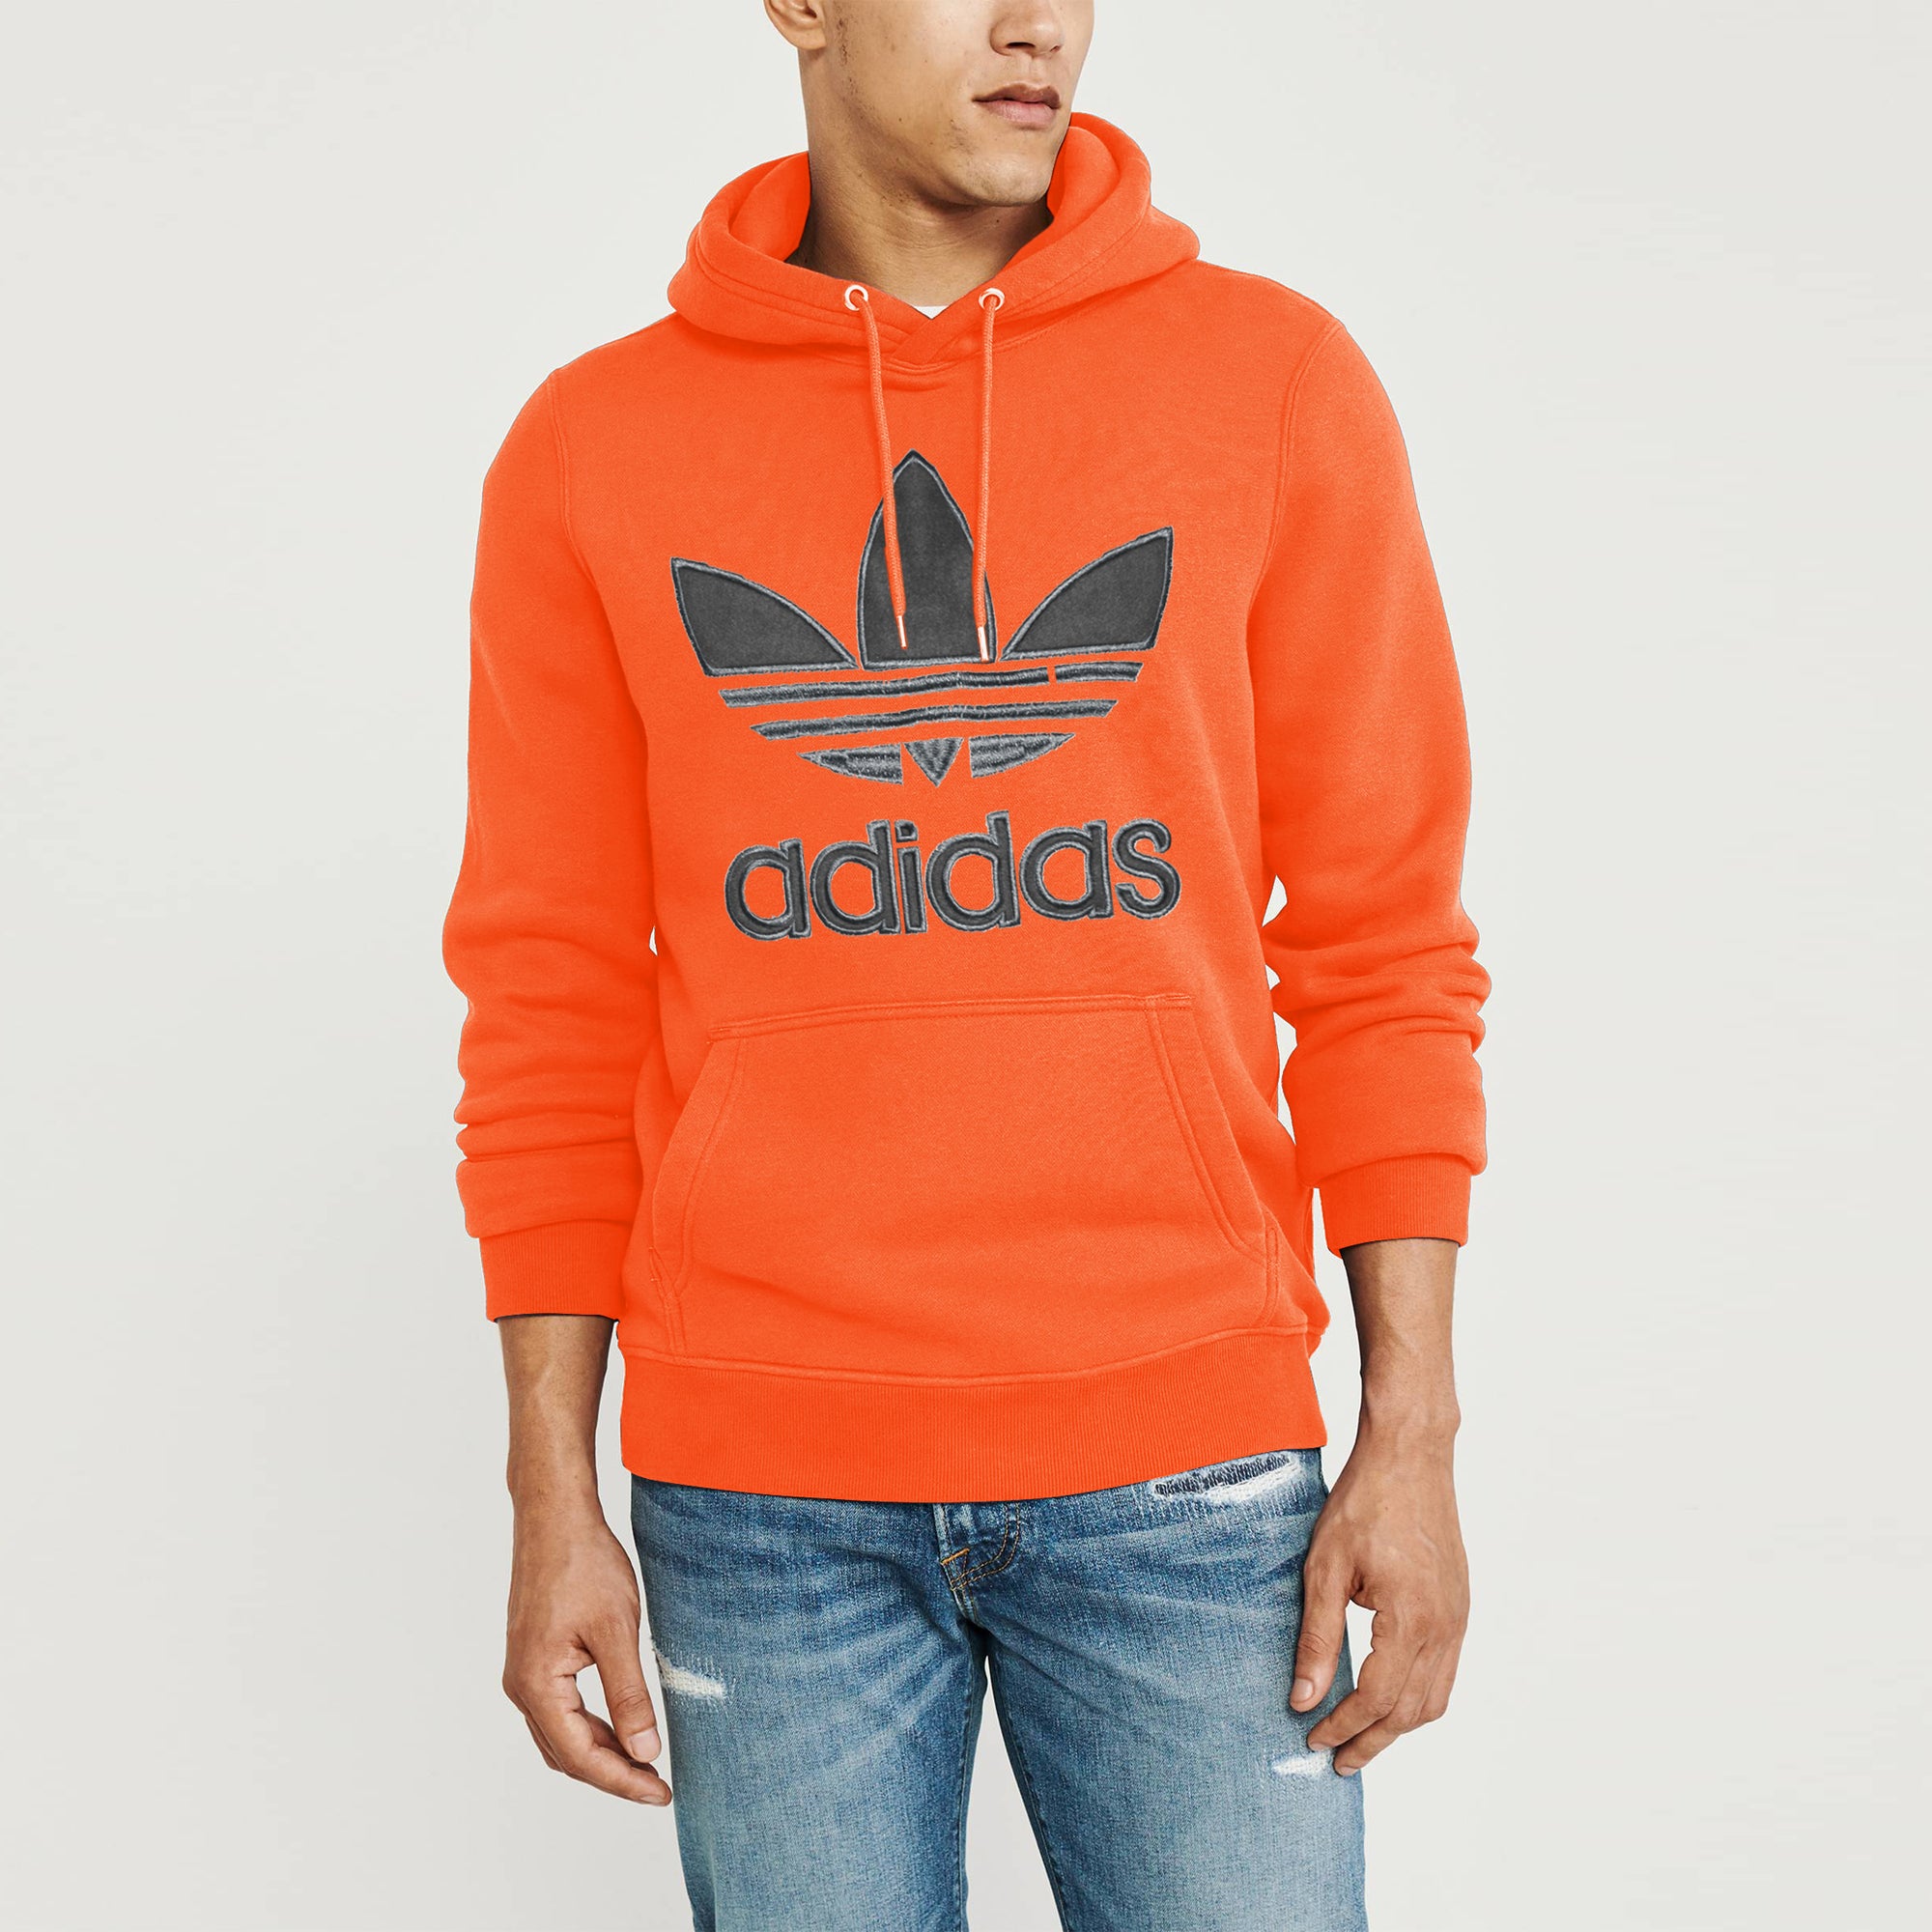 adidas grey and orange hoodie